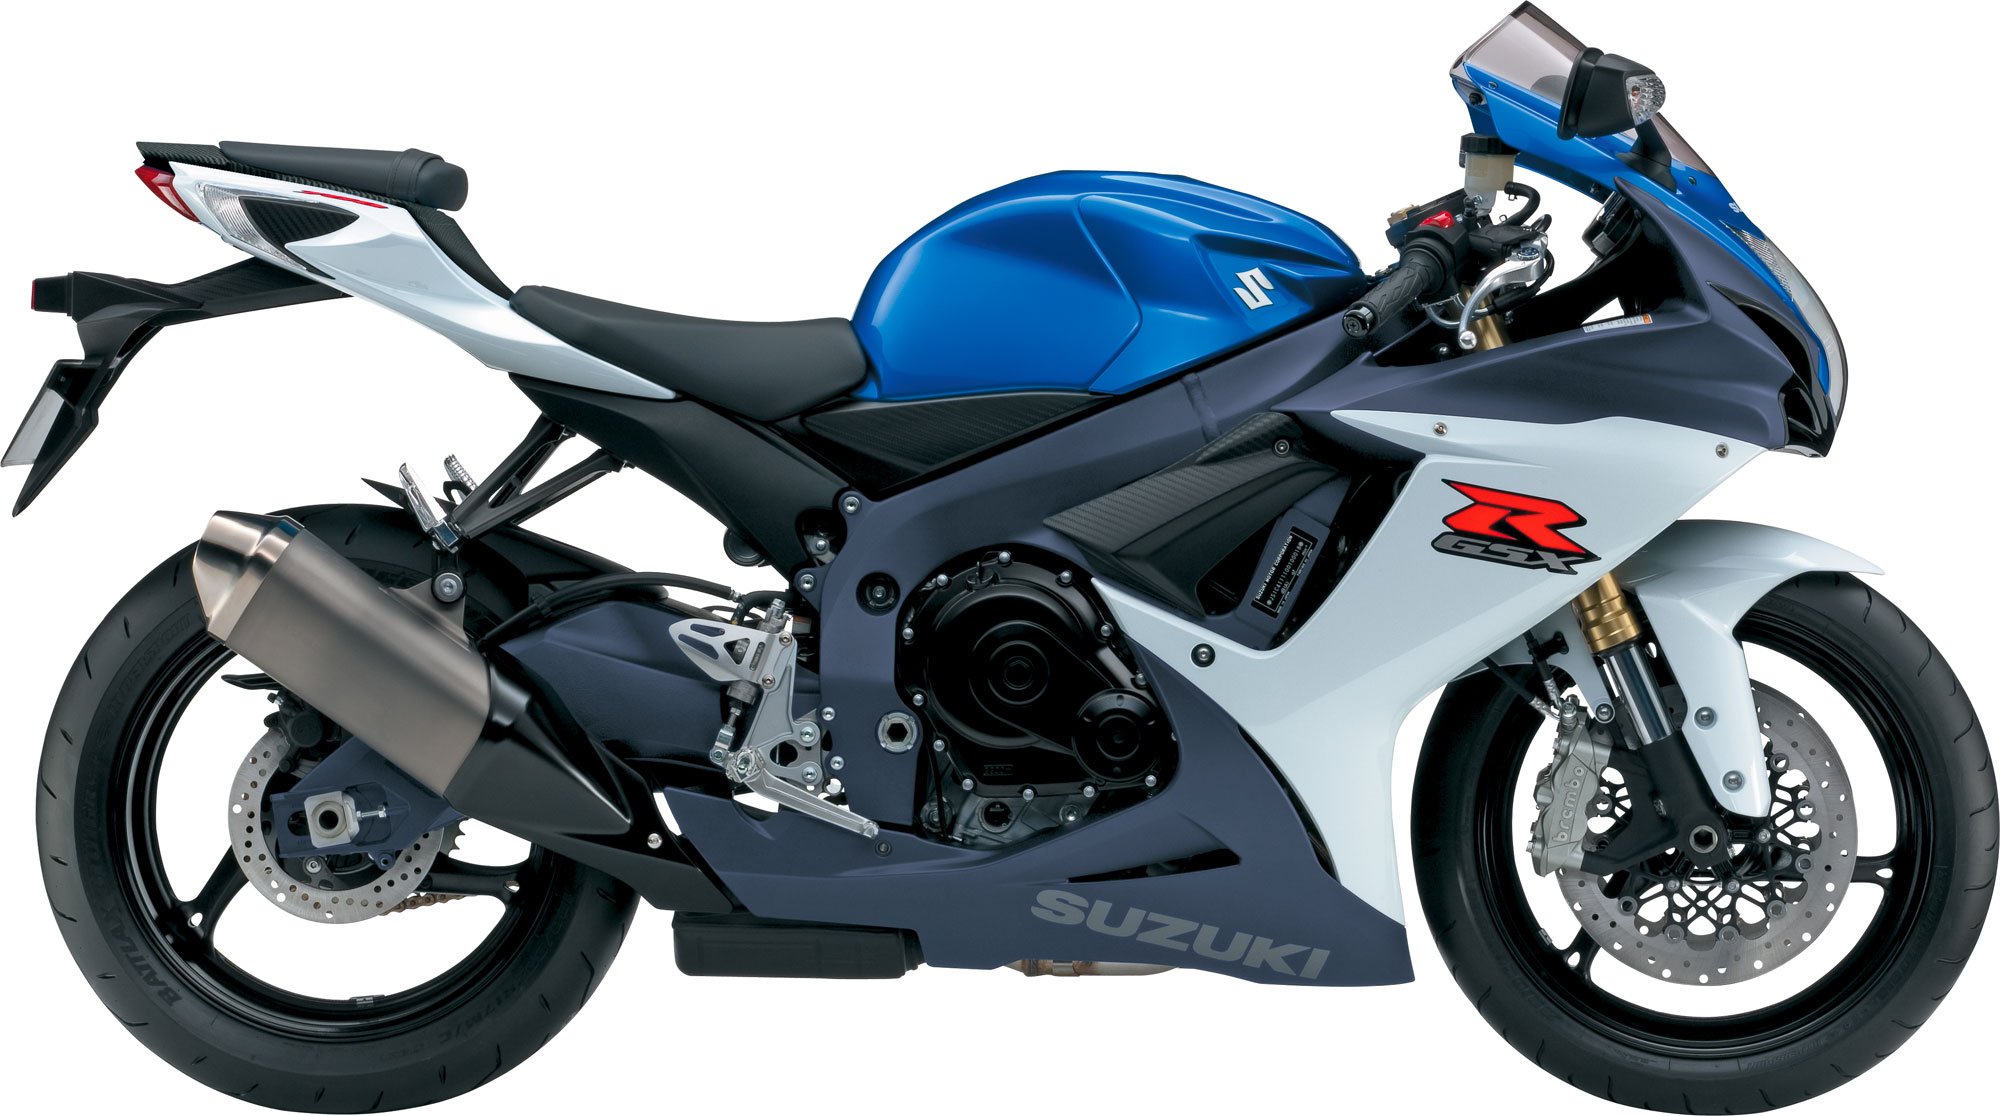 2012, Suzuki, Gsx r750, Motorcycles Wallpaper